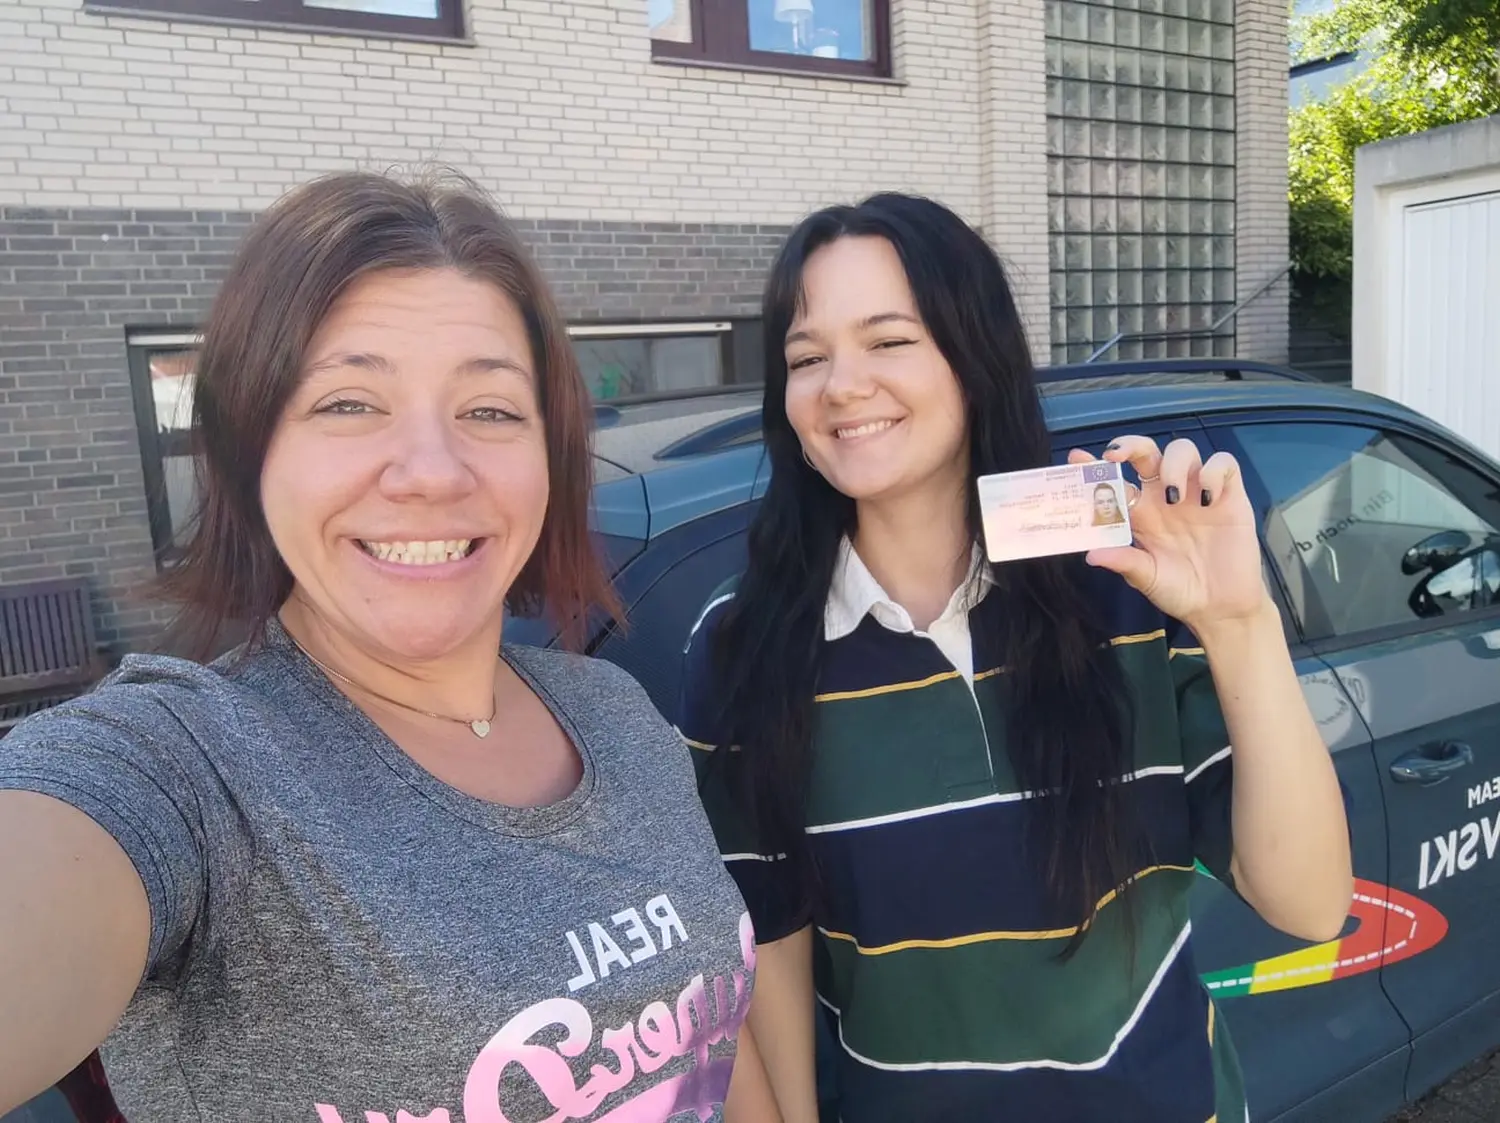 Fahrschulteam Tarnovski GbR, eine lächelnde Frau und ein Mädchen, das die Lizenzkarte zeigt